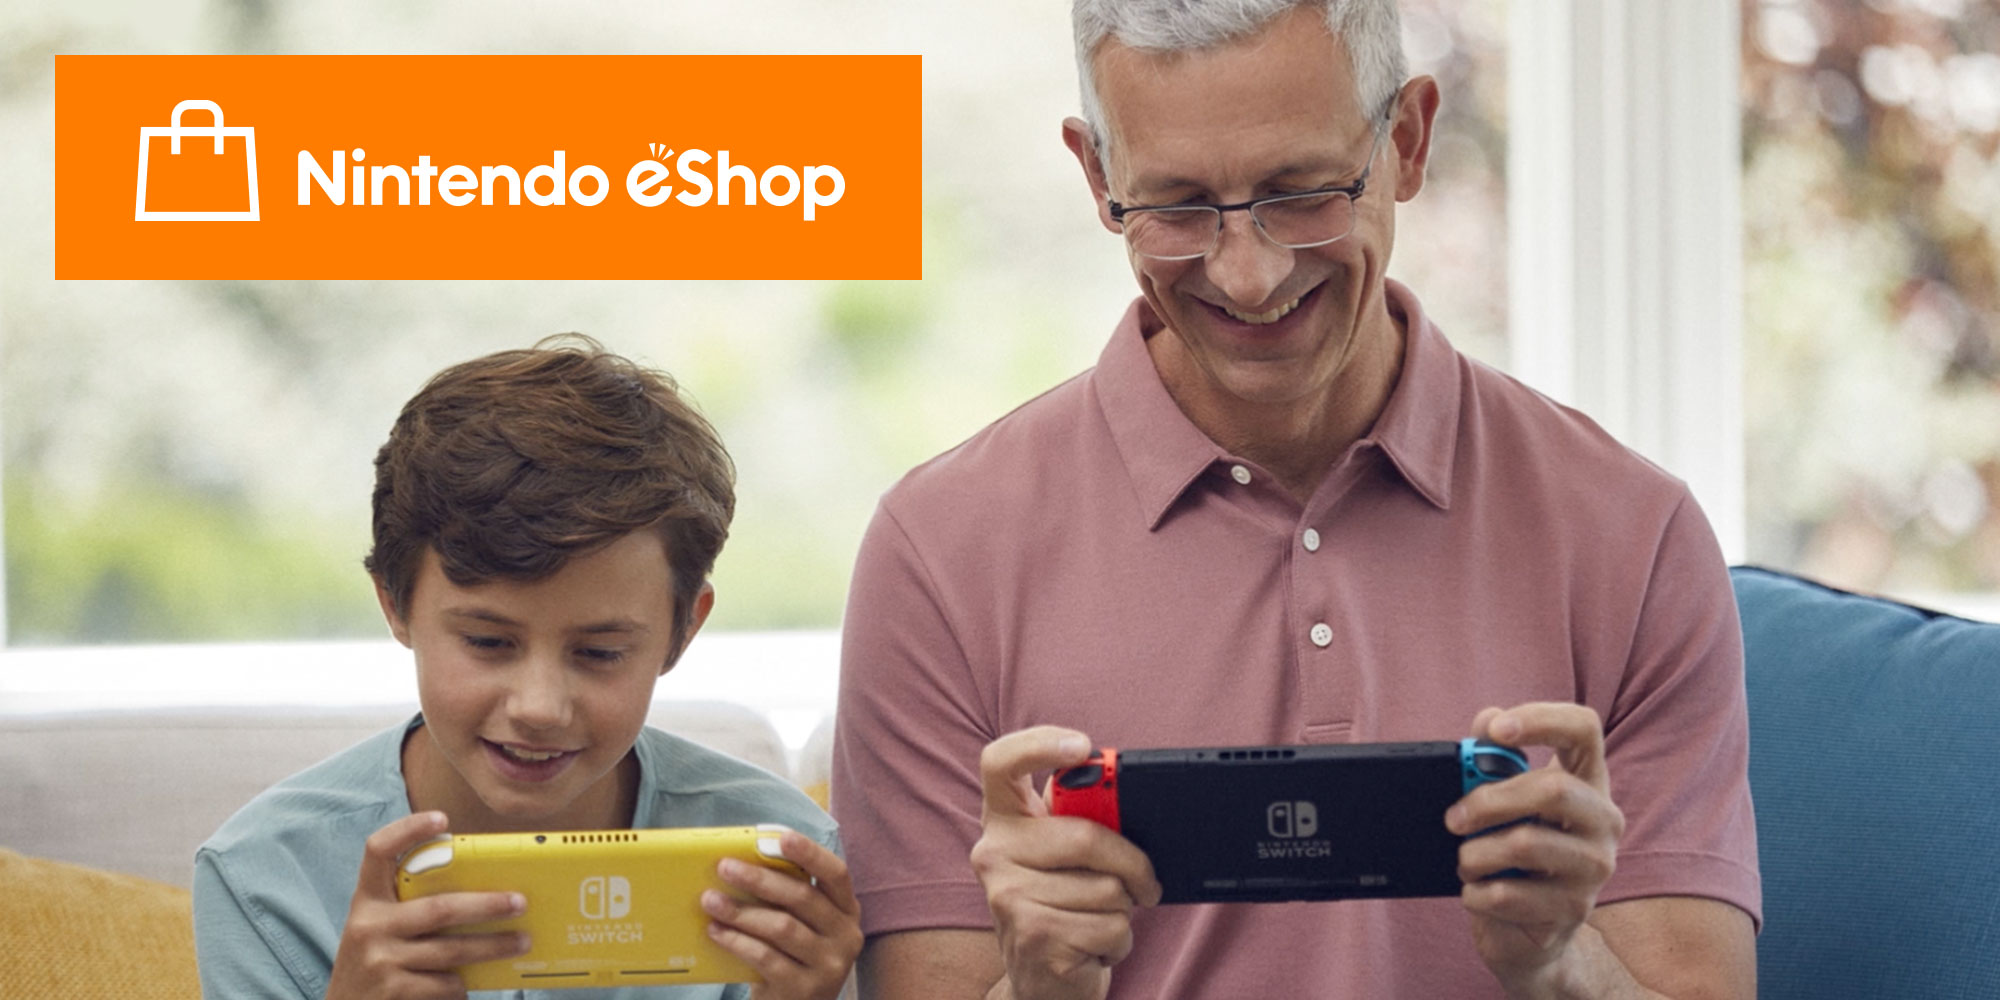 ¡Pasaos al formato digital con Nintendo eShop de Nintendo Switch!